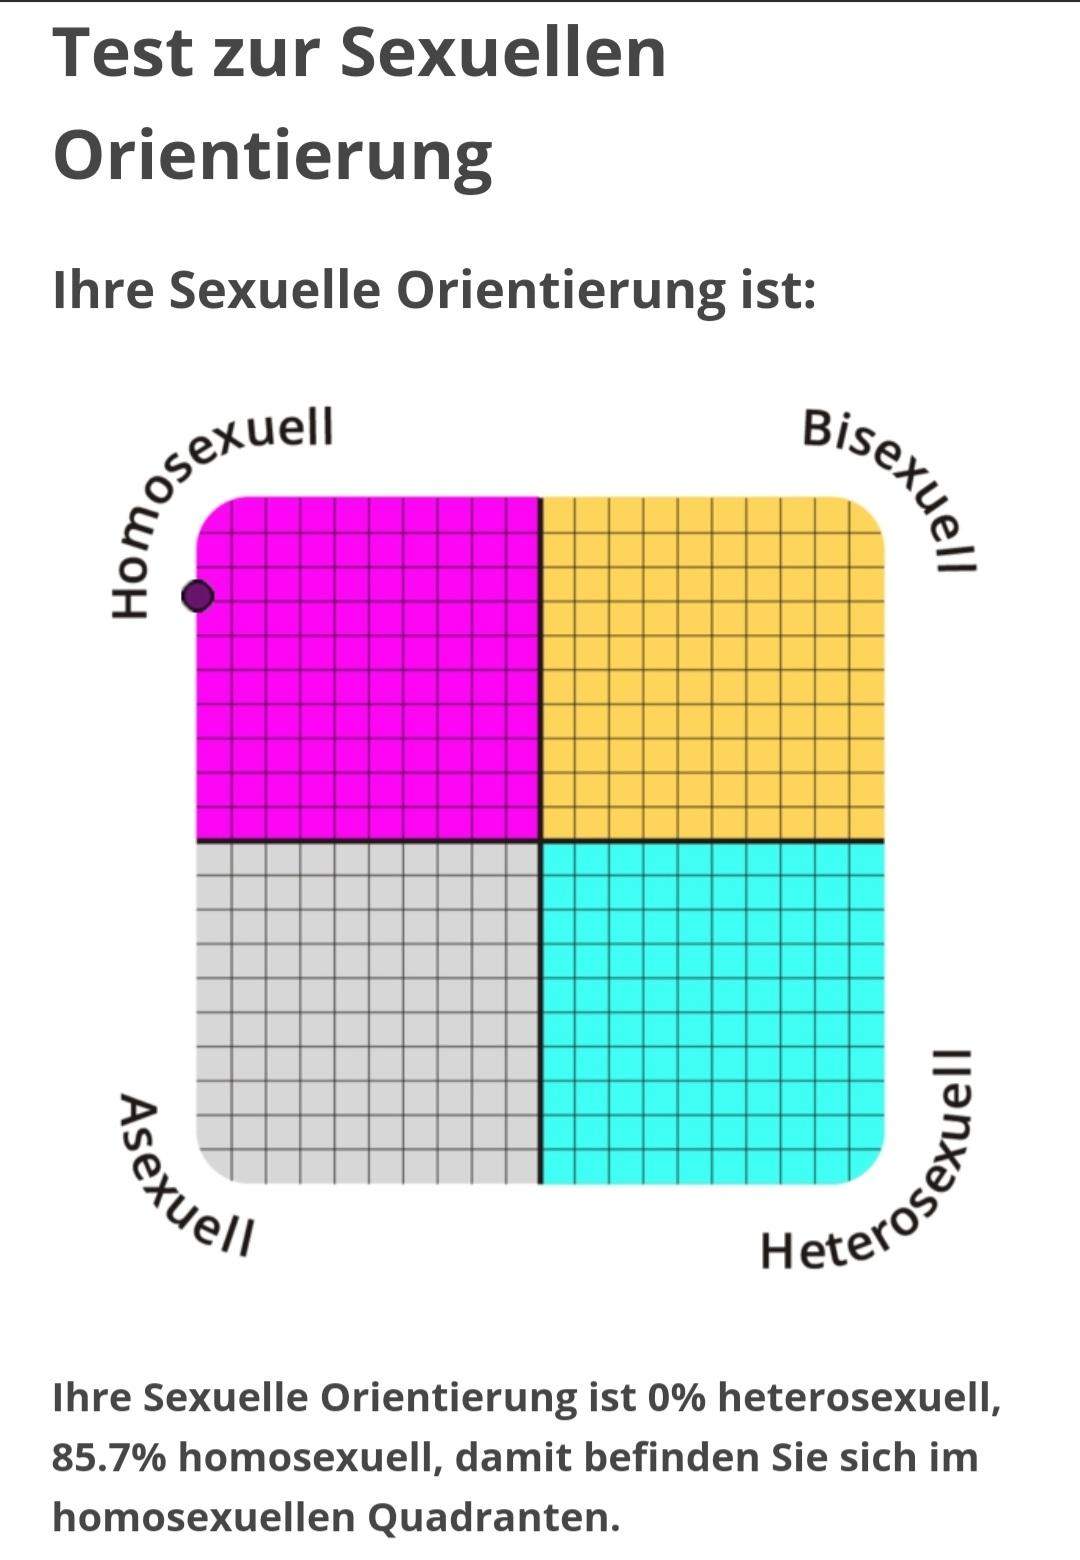 Was Ist Euer Ergebnisbei Diesem Test Zur Sexuellen Orientierung Liebe Frauen Männer 7584